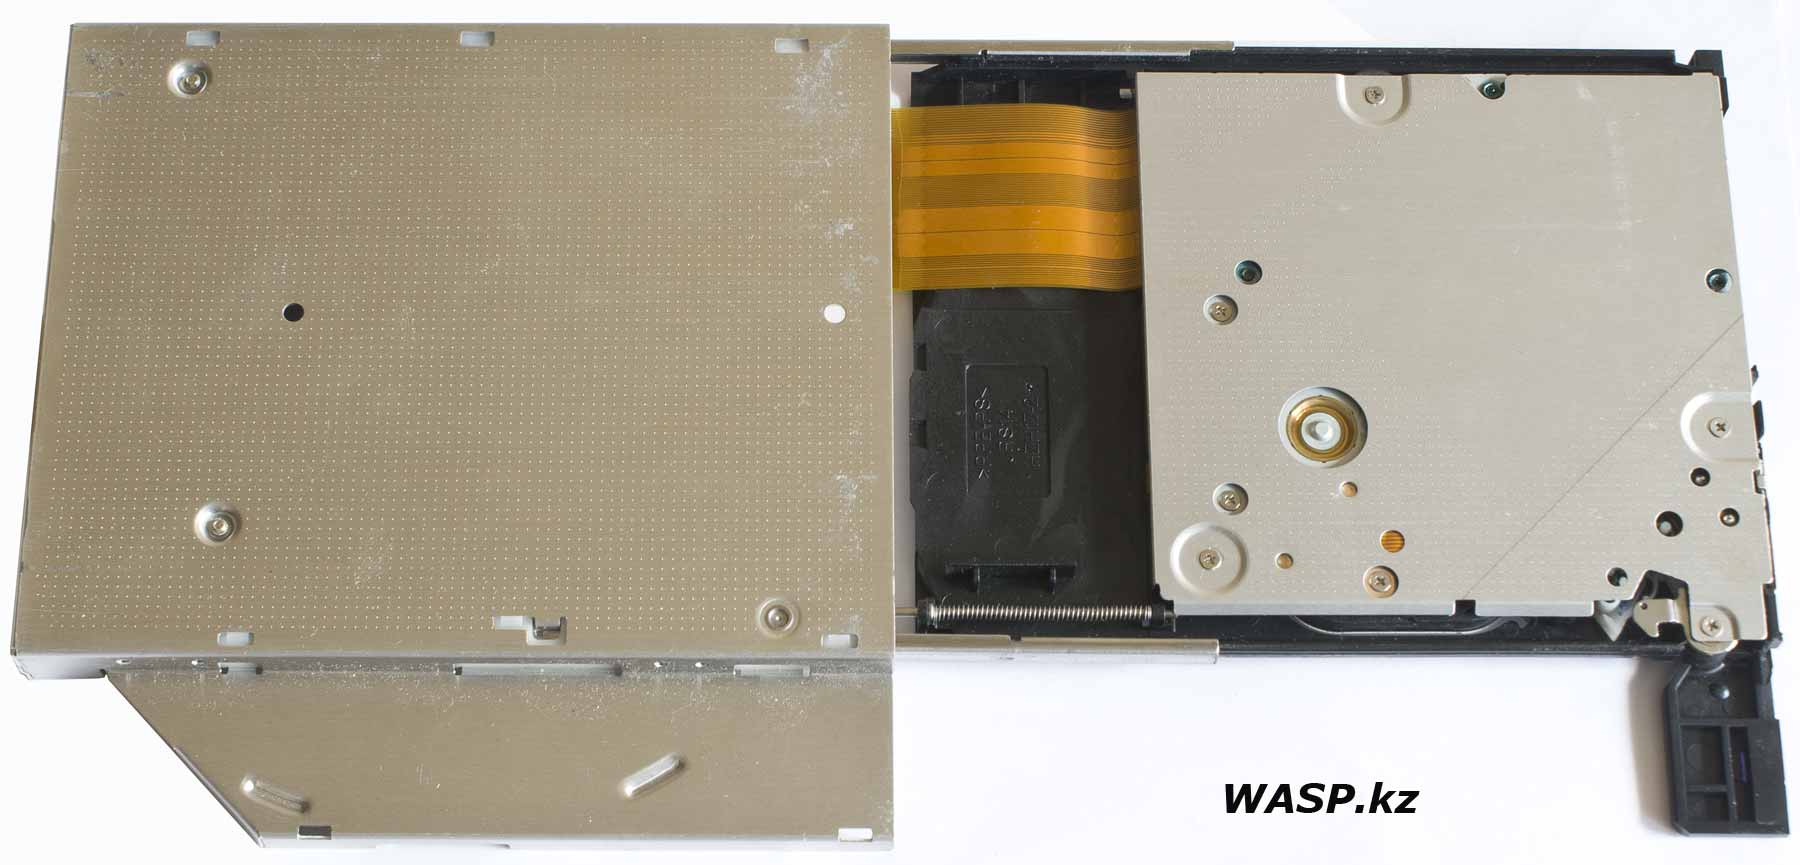 GSA-T40L DVD разборка и ремонт, чем заменить и как поставидь жесткий диск